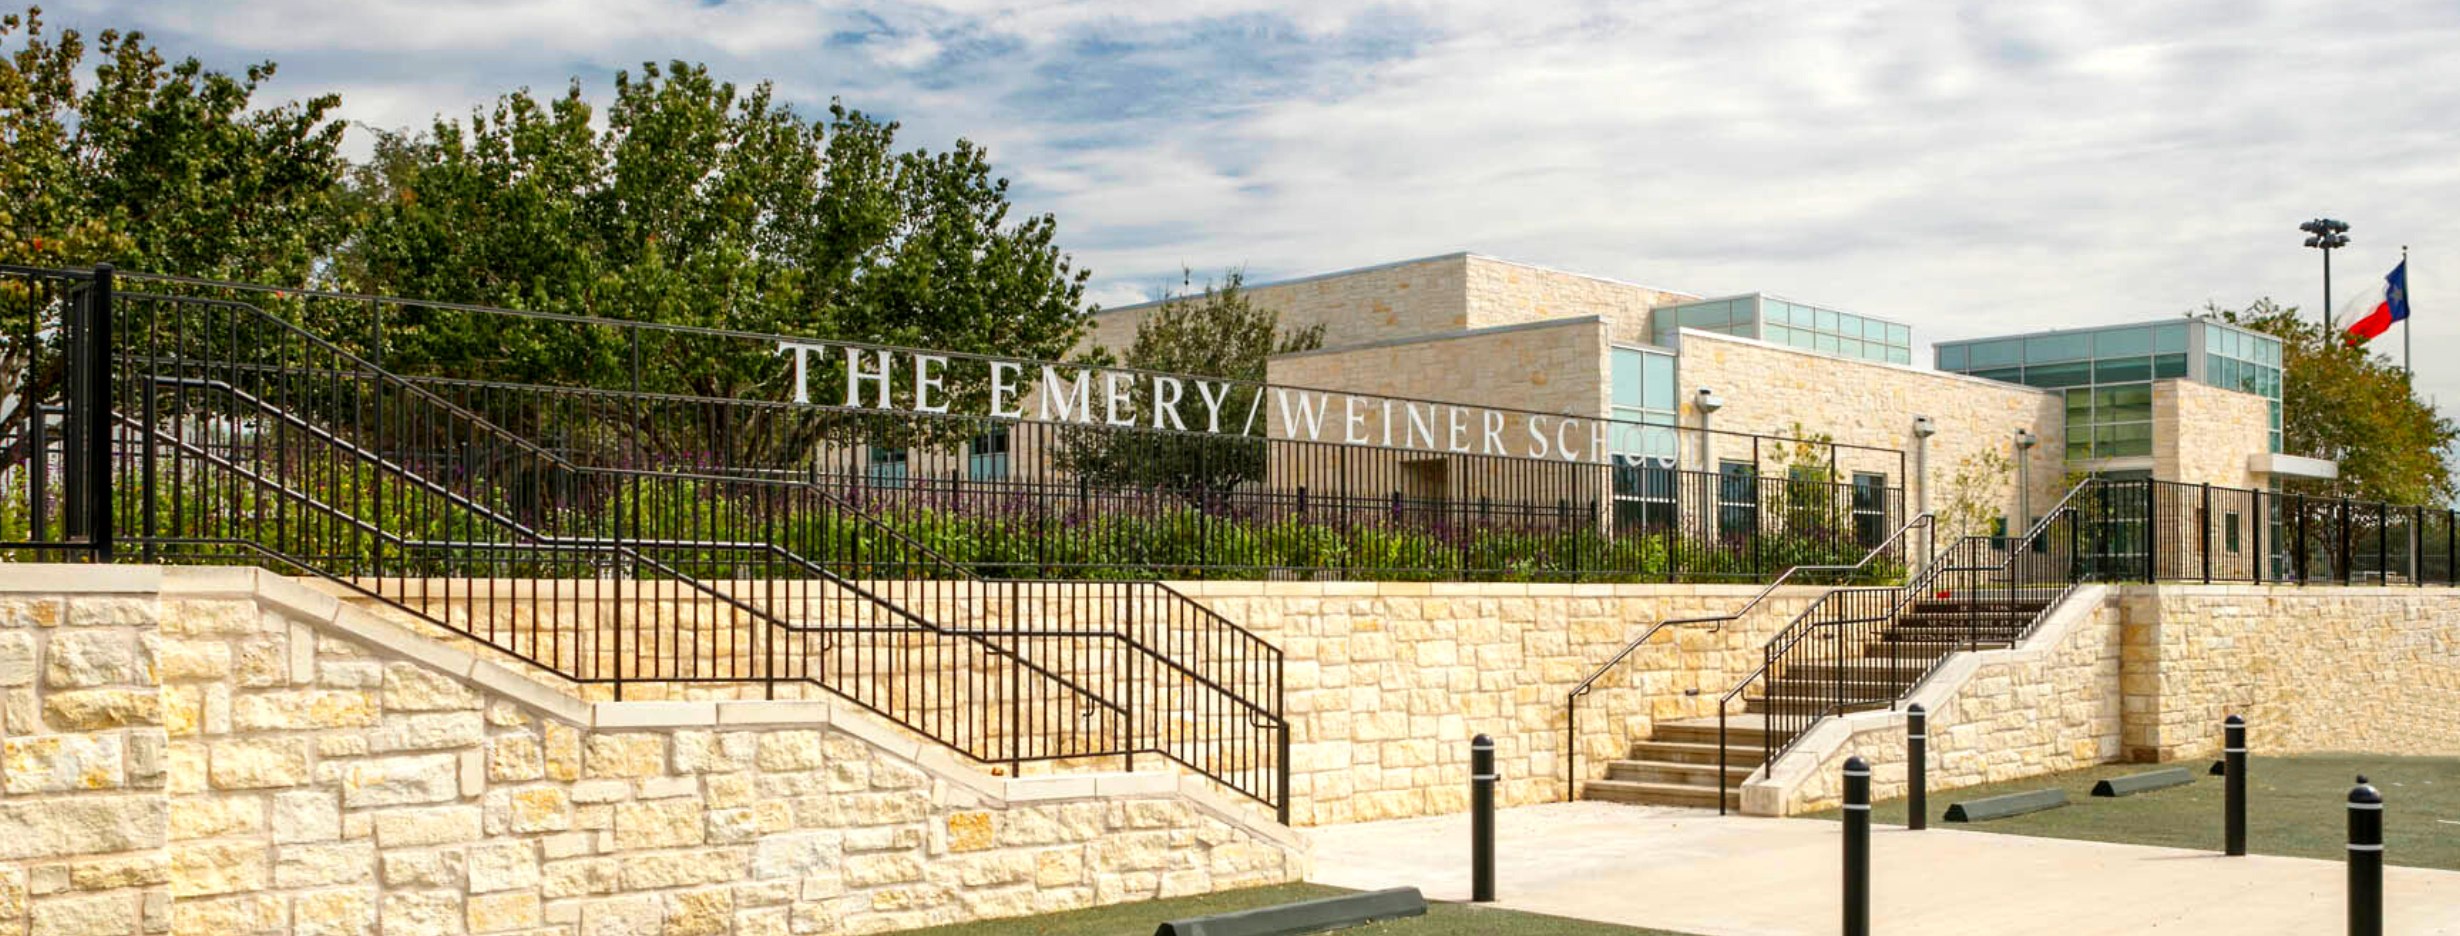 The Emery/Weiner School – Houston